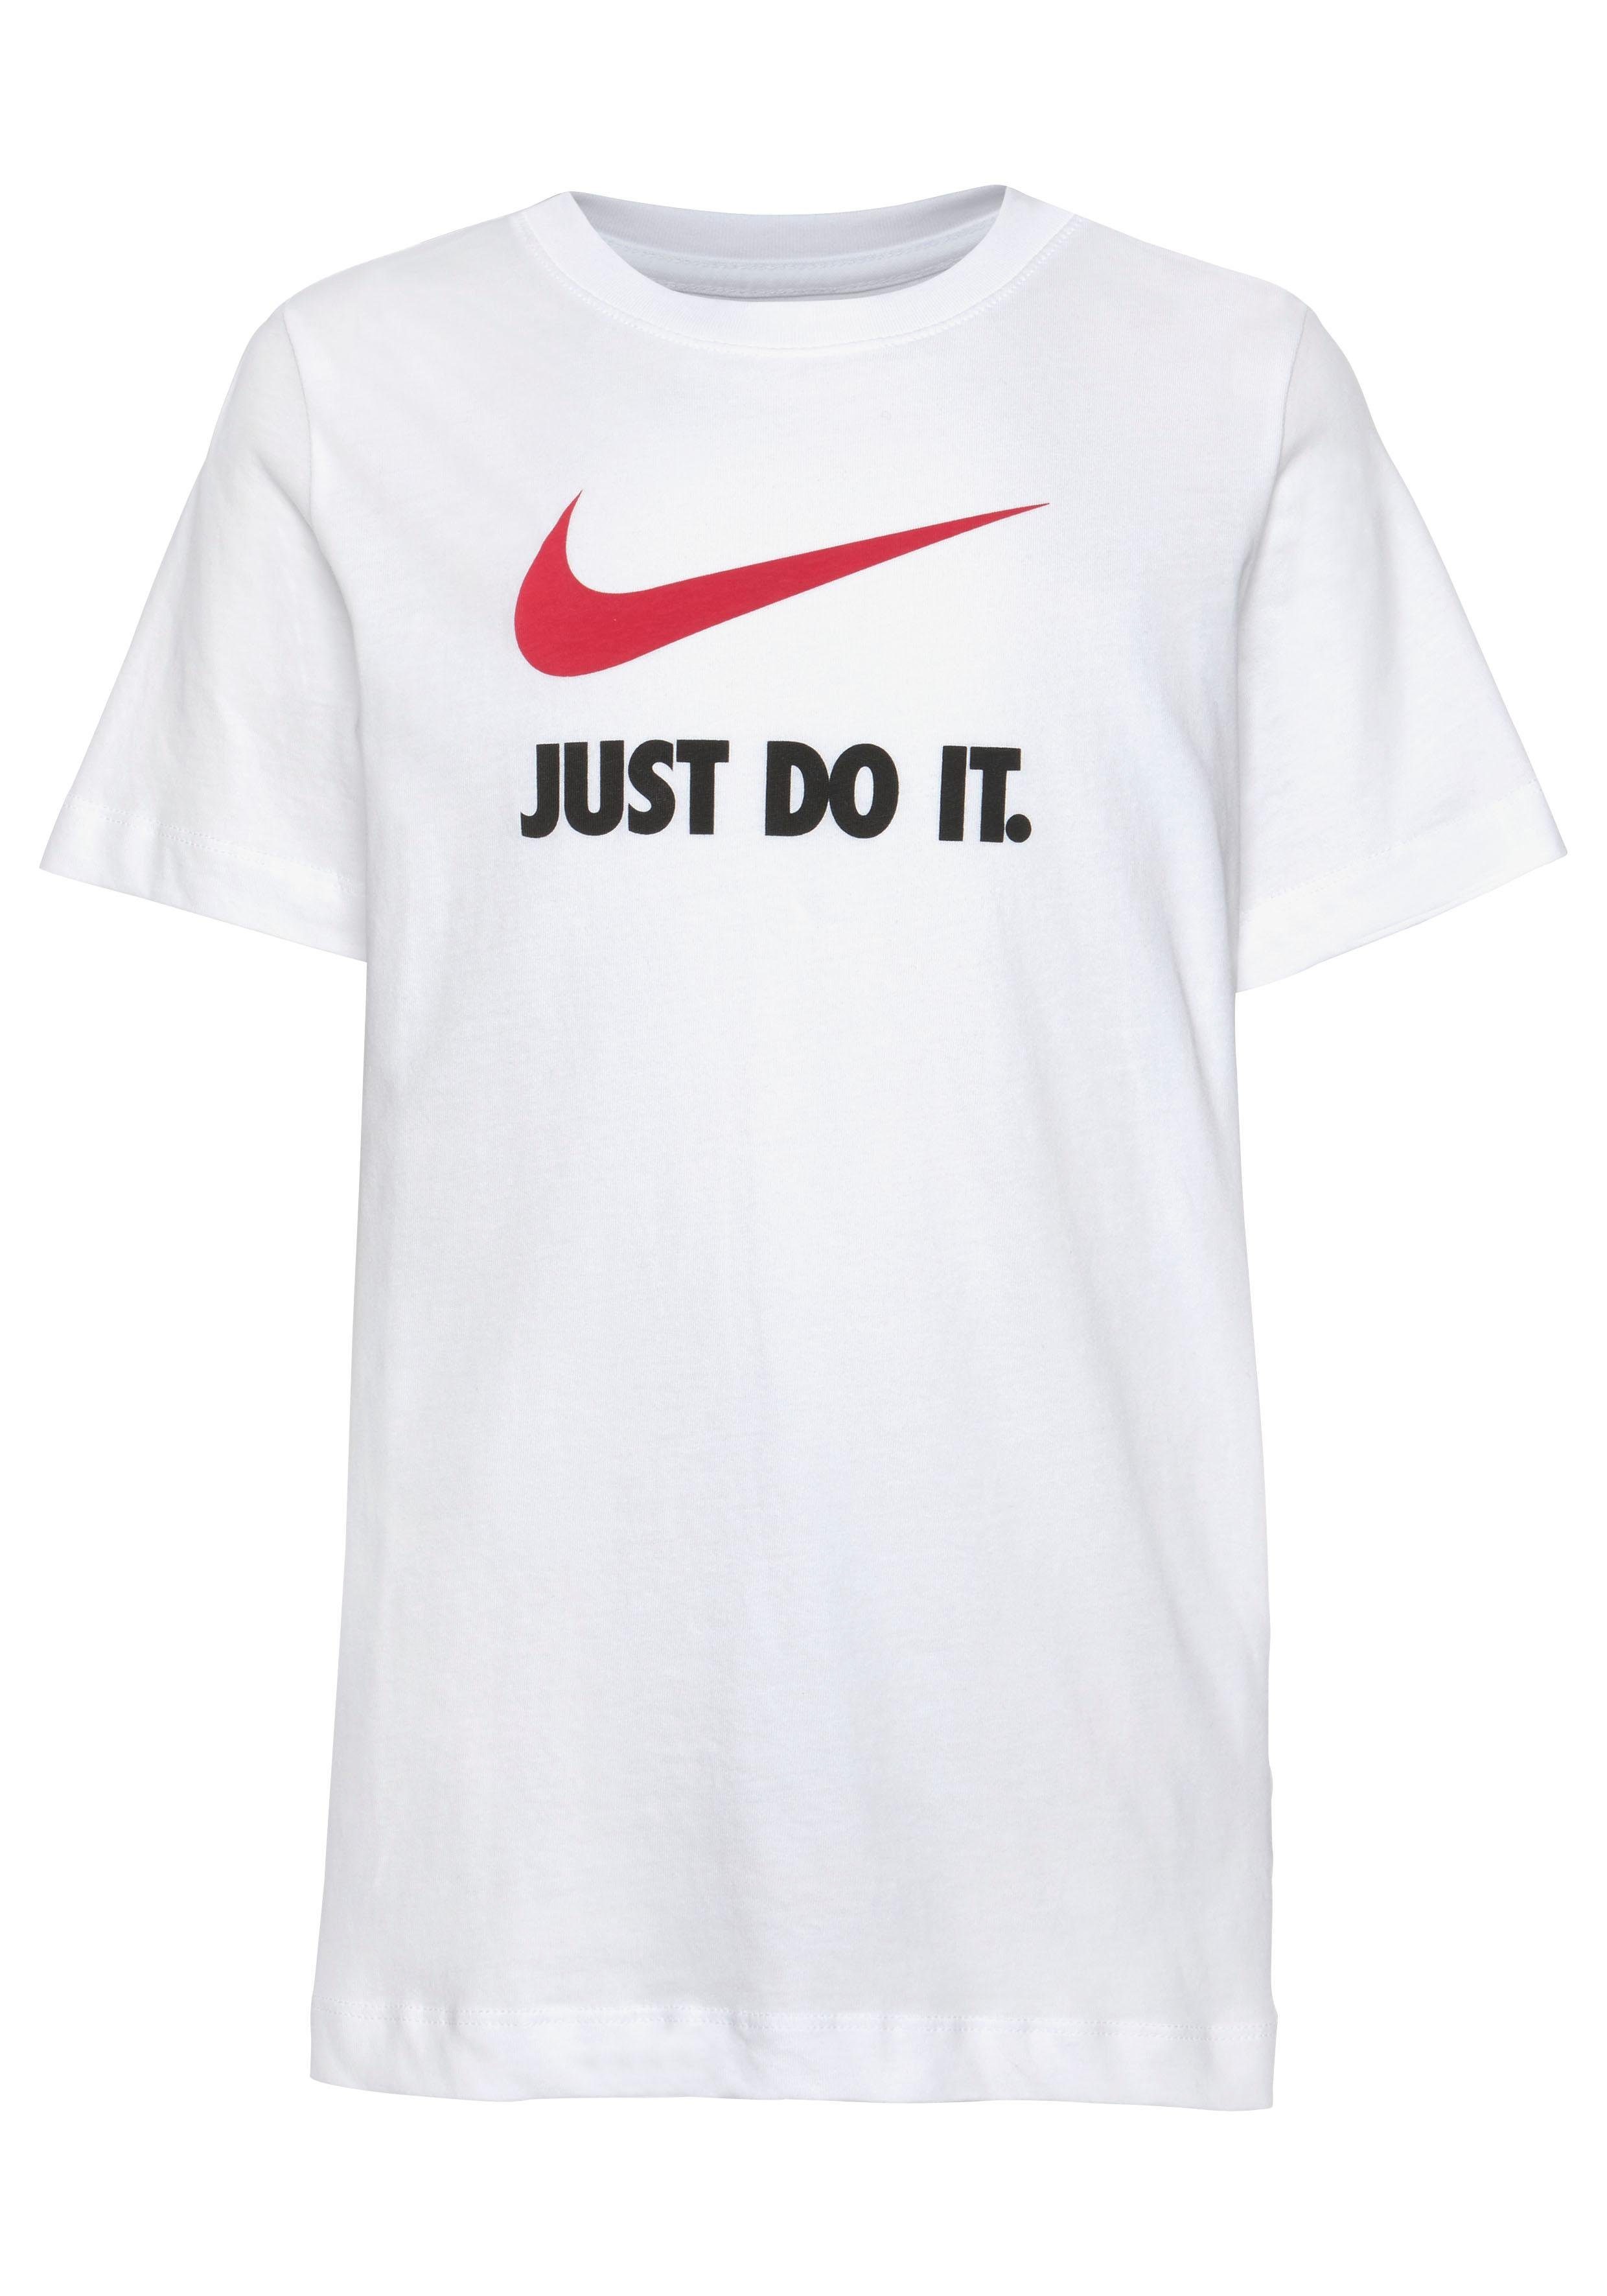 Nike Sportswear Kids' T-Shirt weiß Big T-Shirt JDI